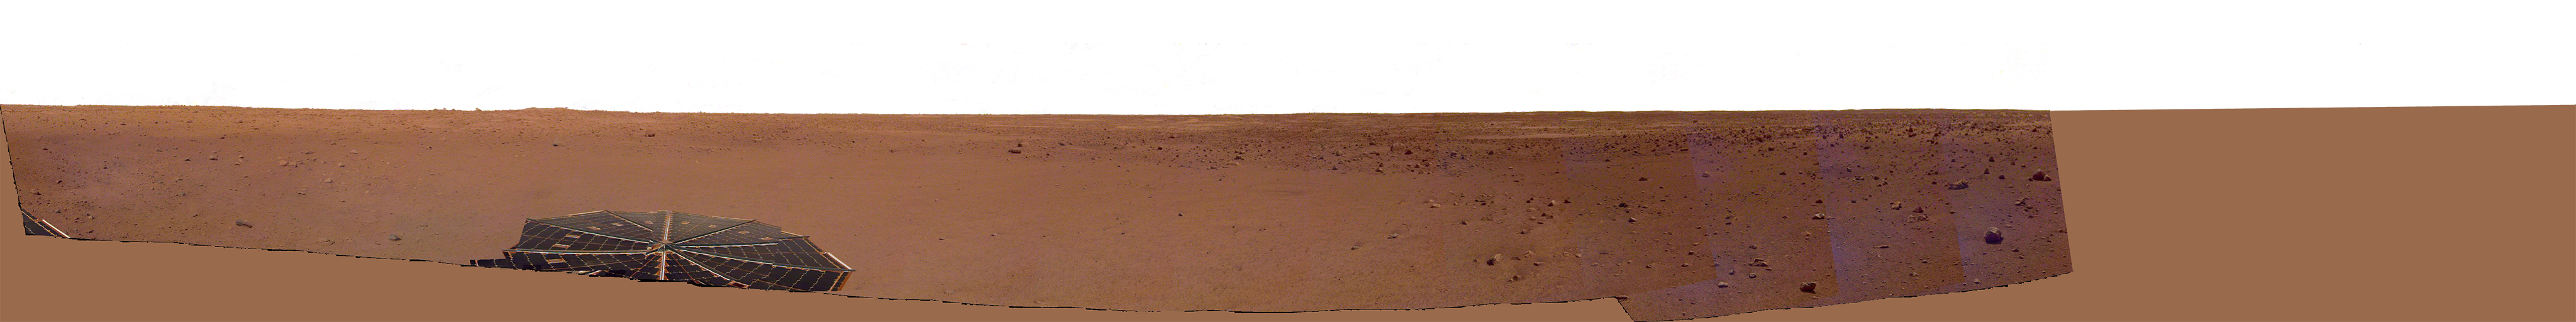 Mars InSight in Elysium Planitia